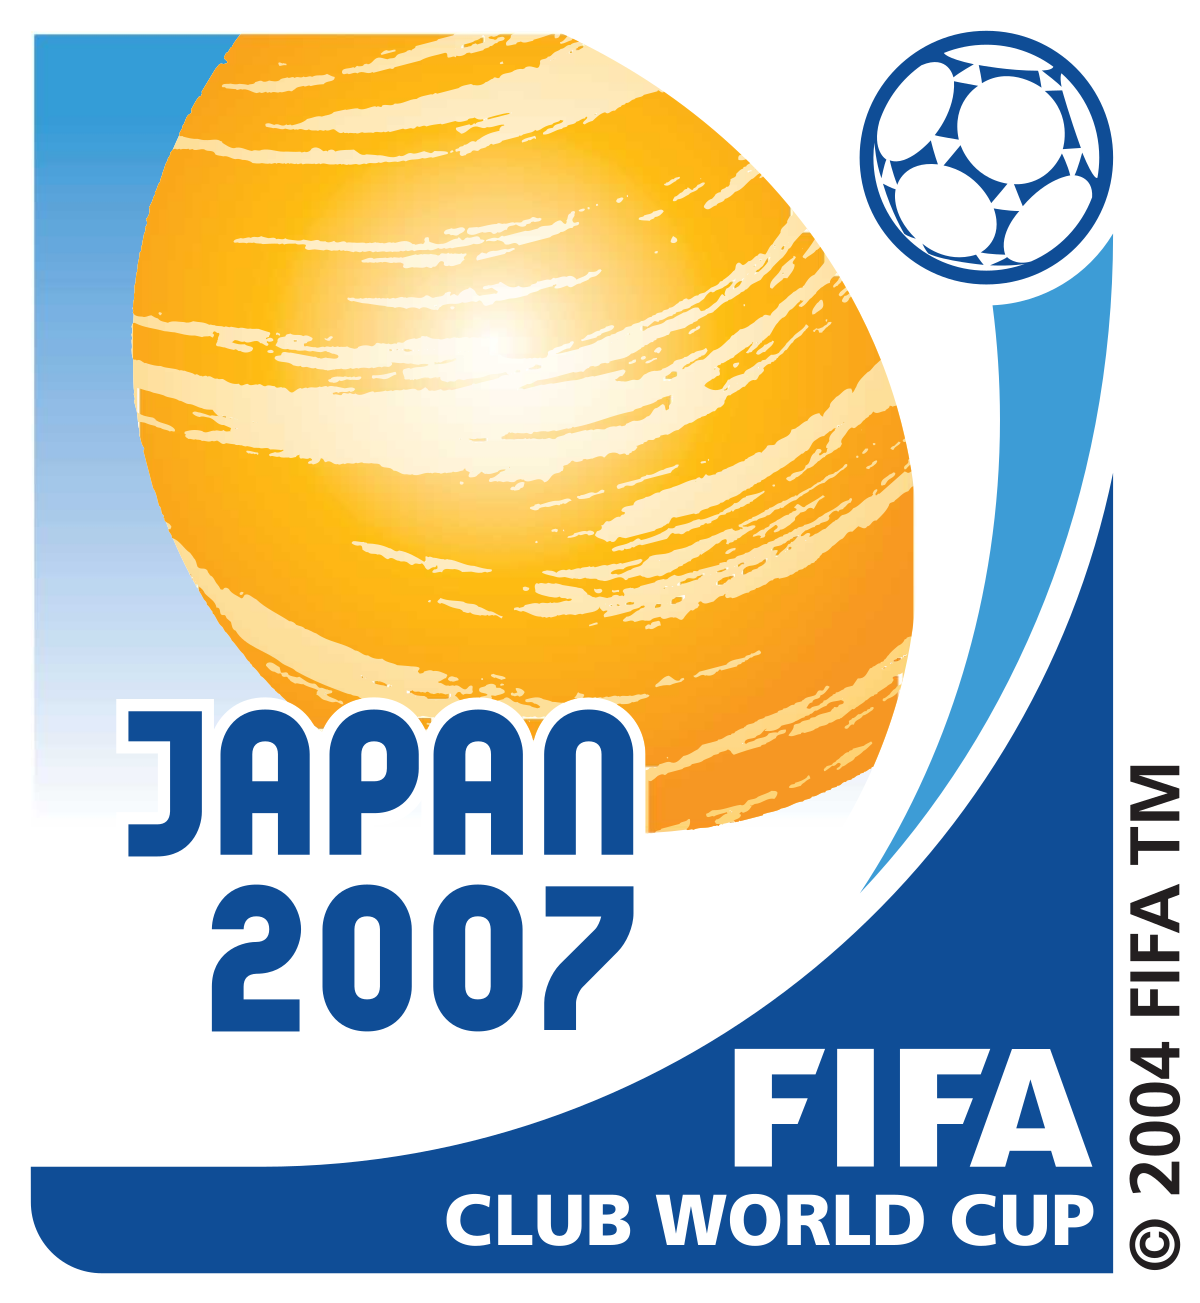 Fifa club. FIFA Club World Cup.